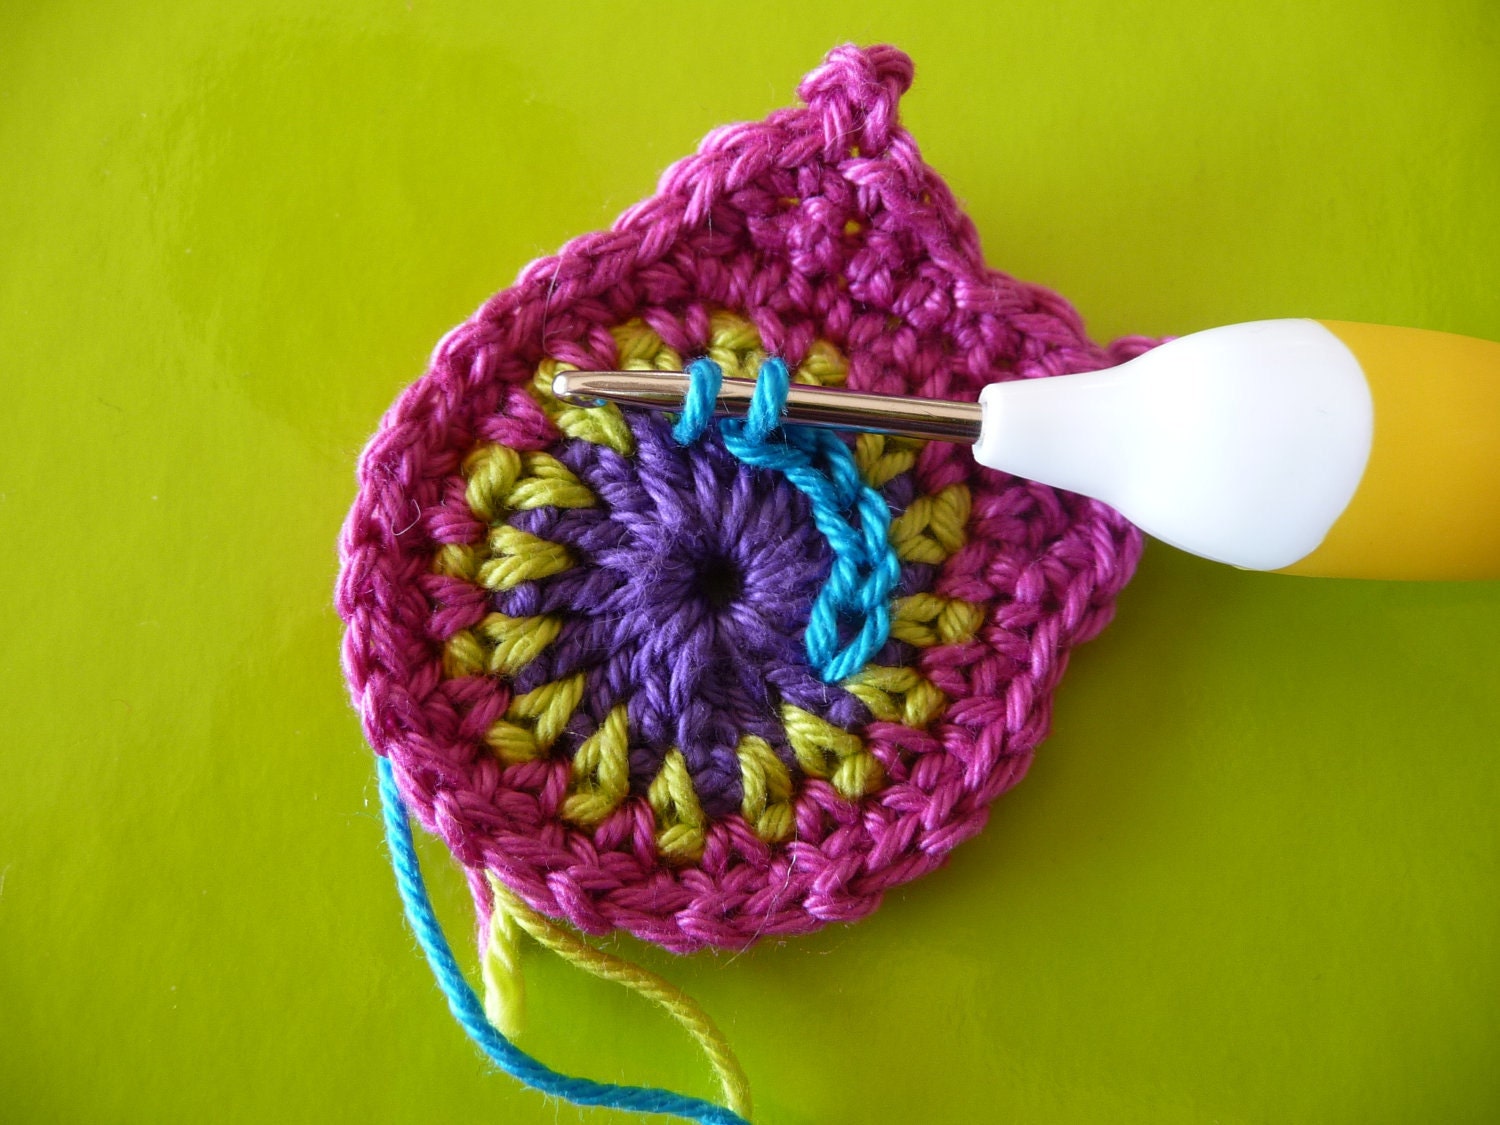 Owl crochet pattern by ATERG.crochet